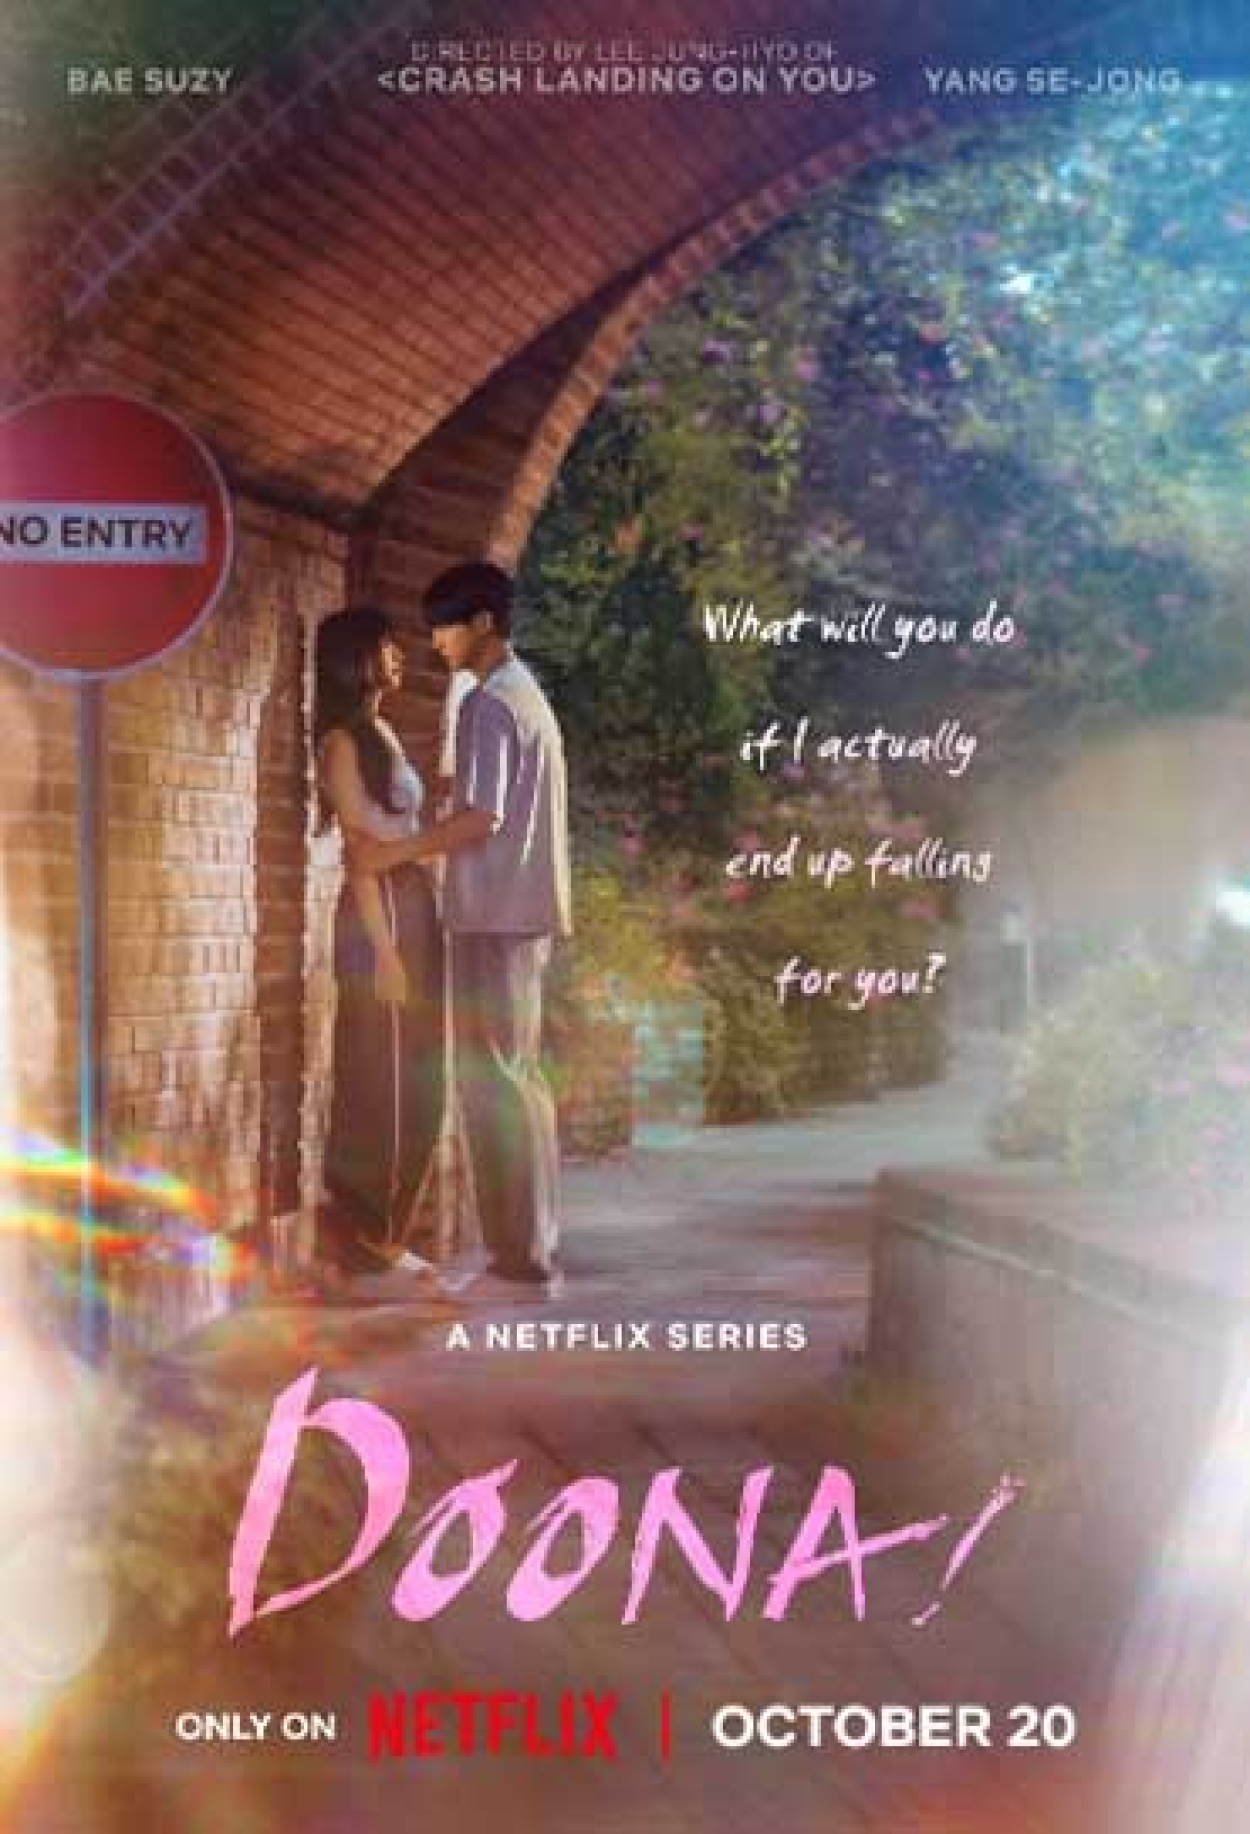 Doona!: elenco, sinopse e data de lançamento do novo dorama da Netflix